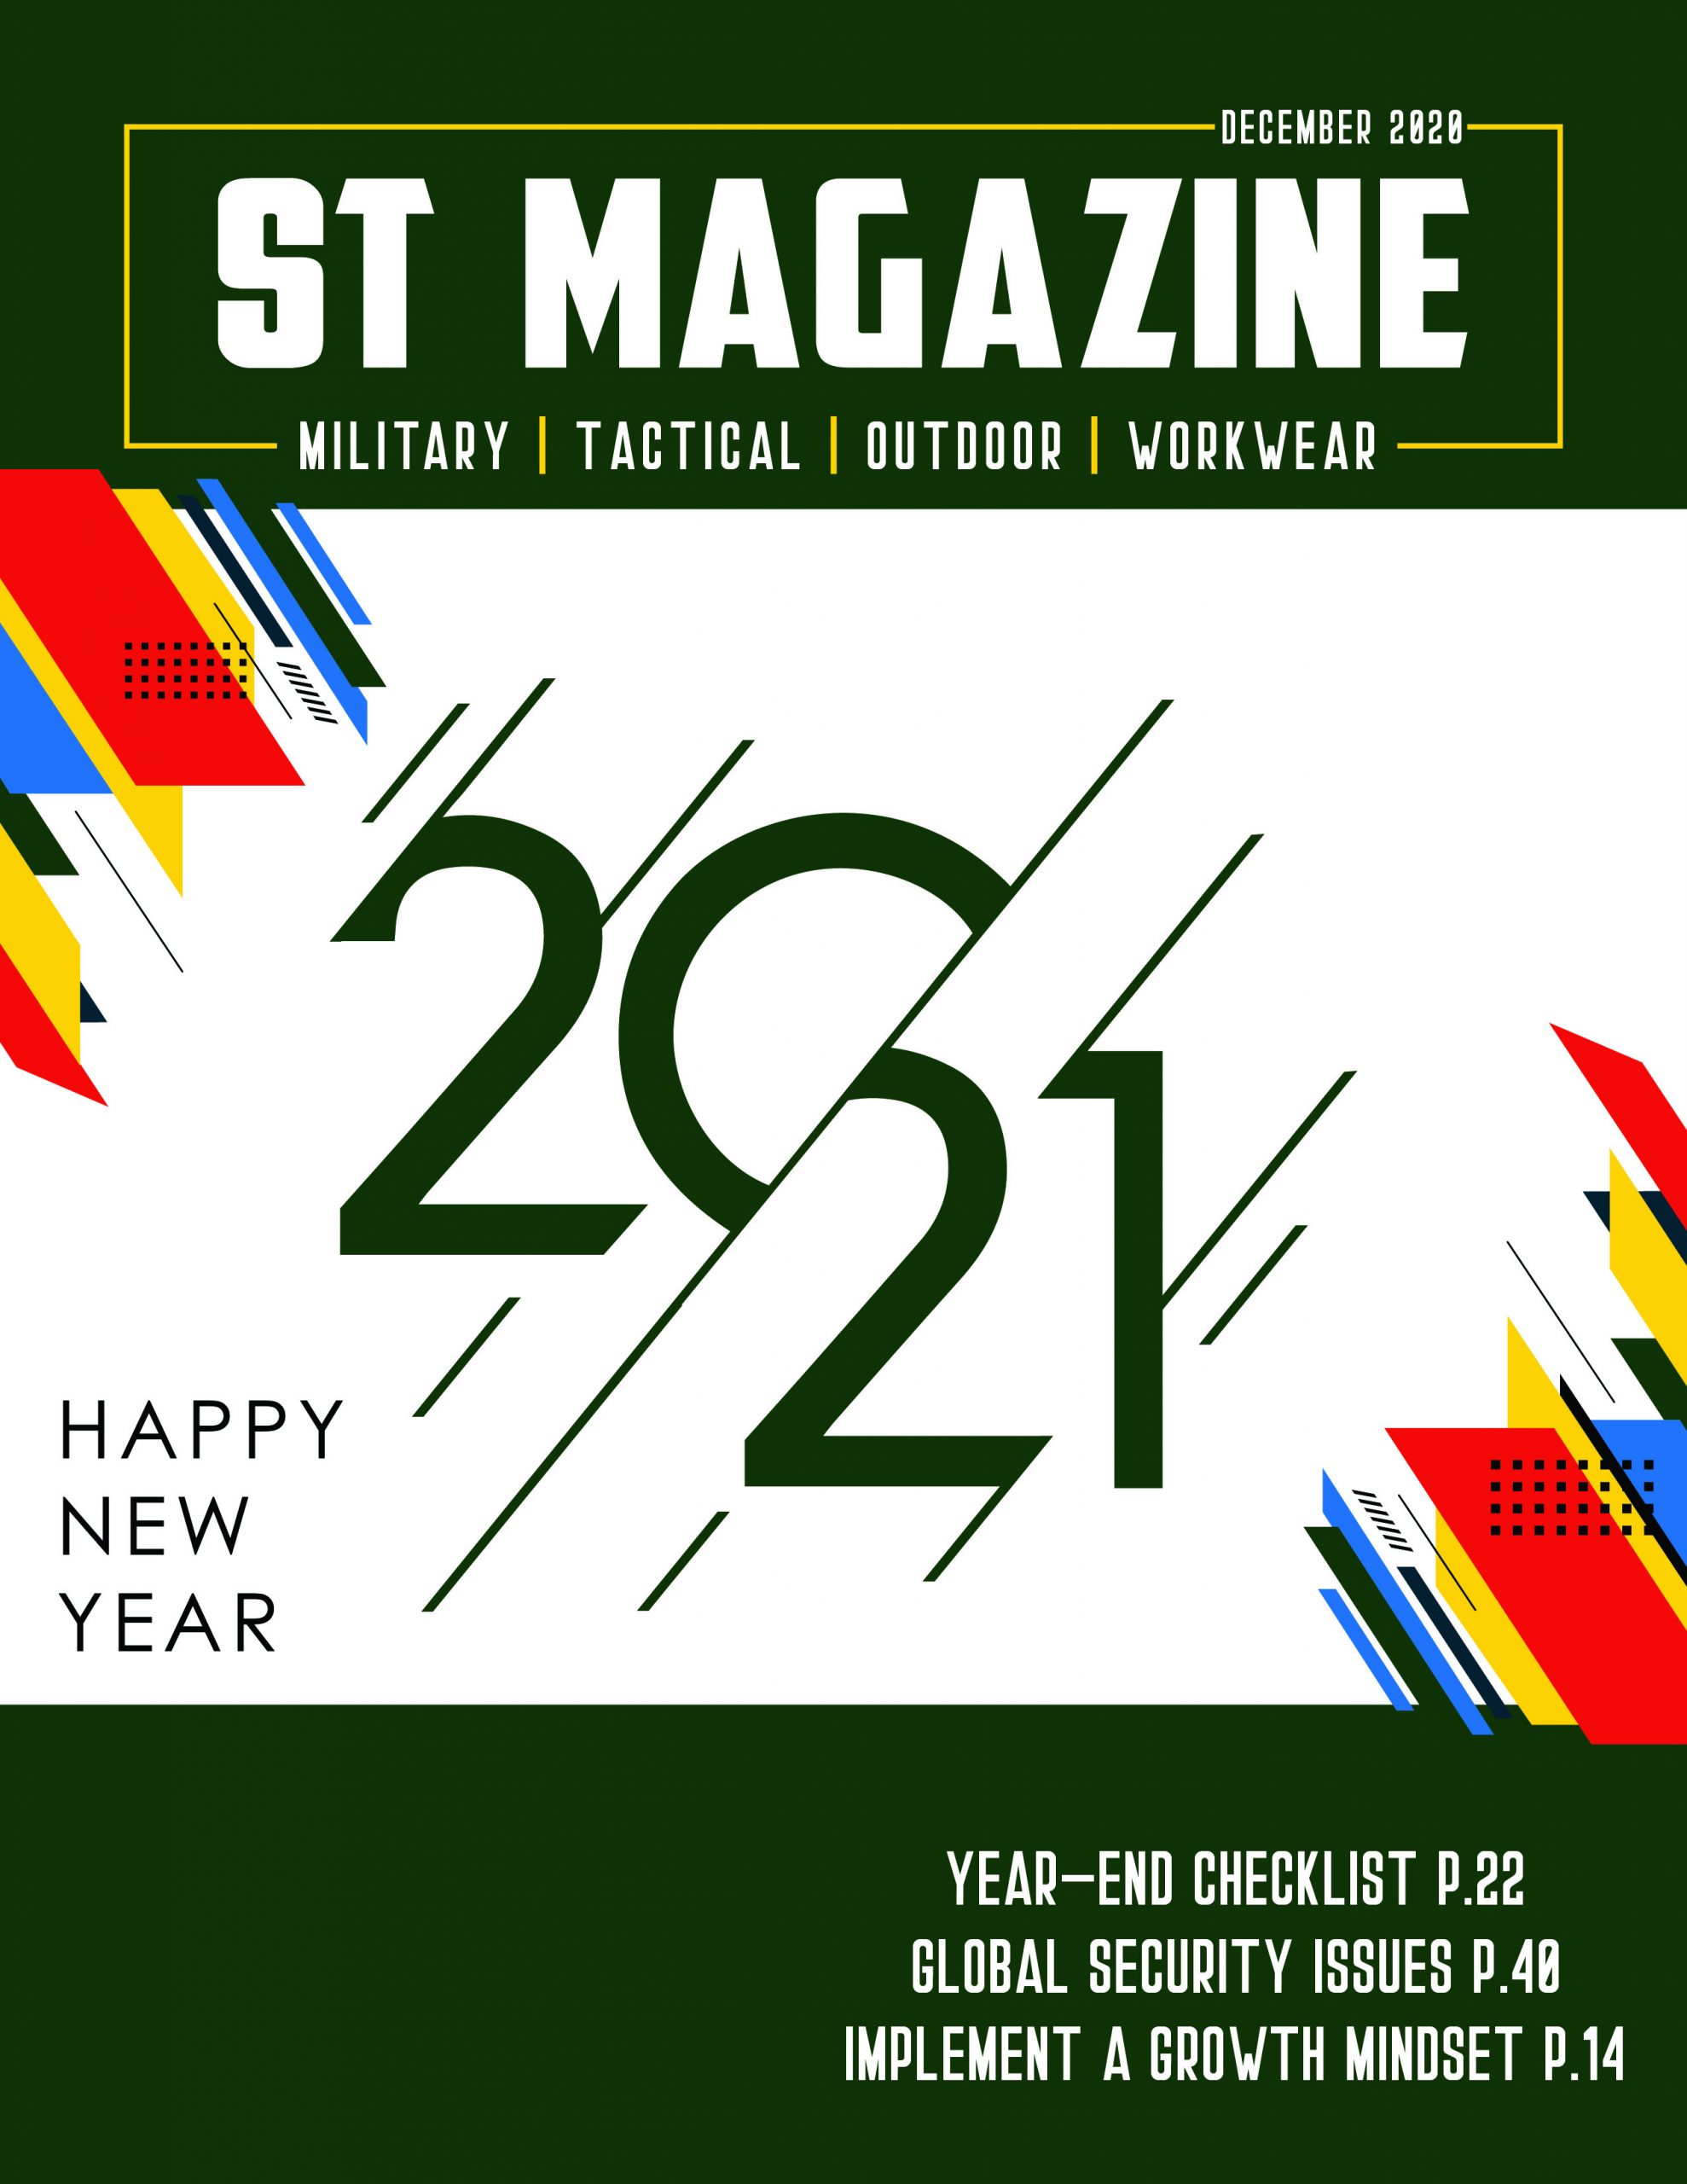 ST Magazine Image 2